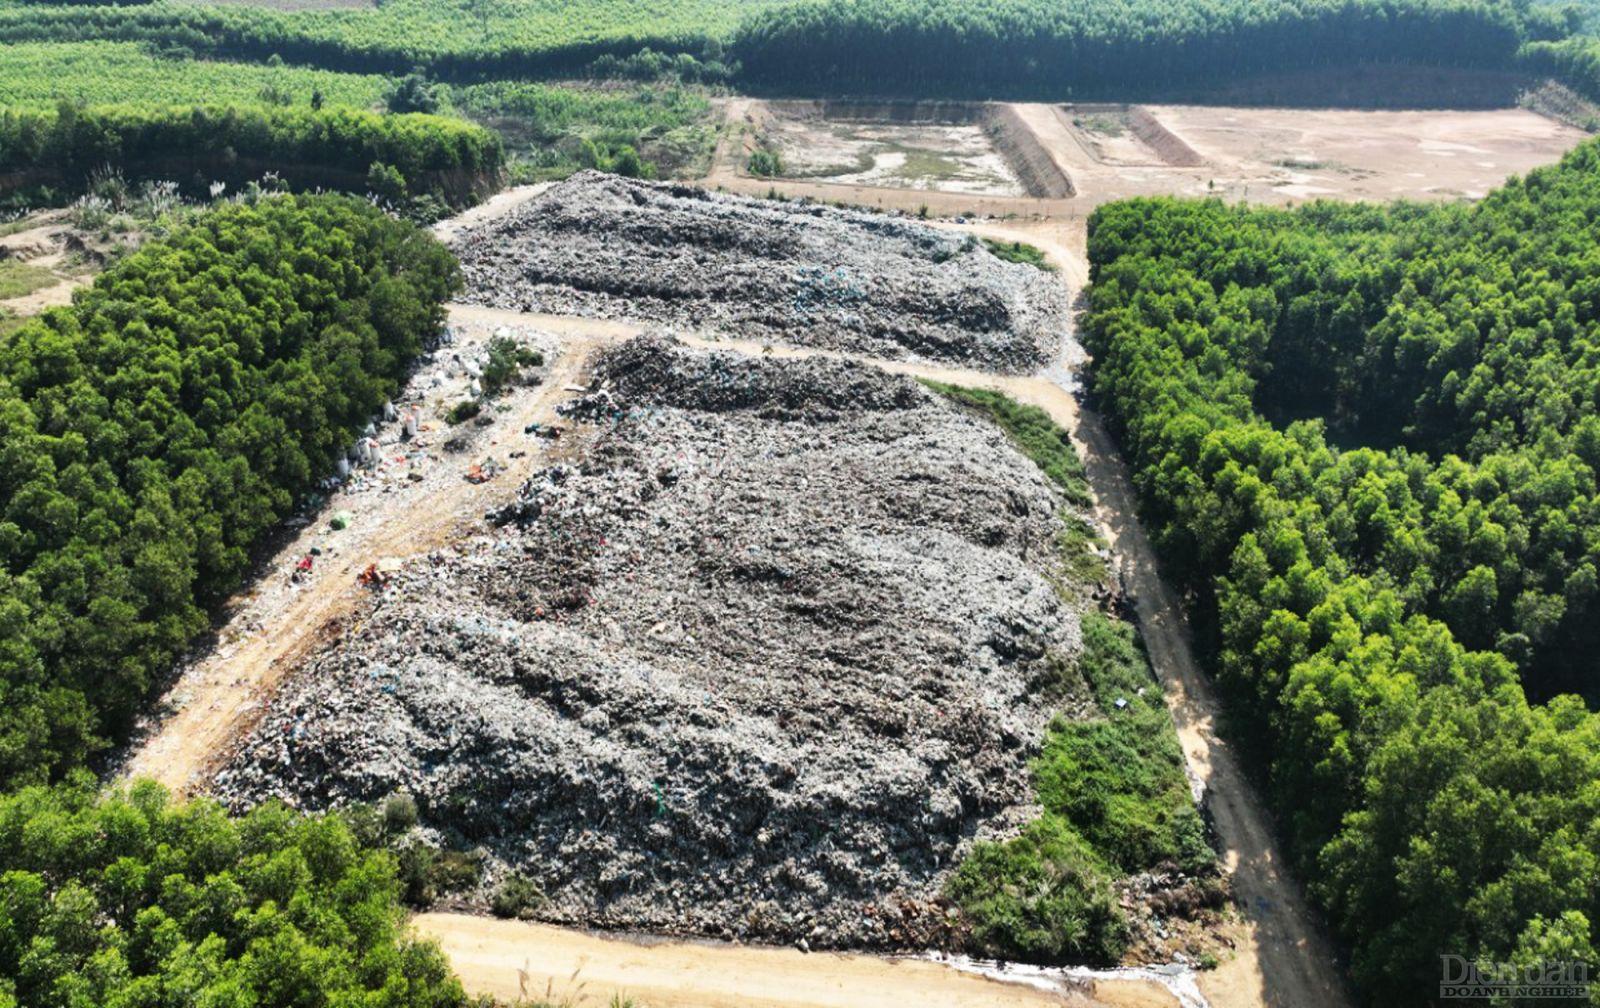 Nhà máy xử lý rác thải Thái Hòa gần 150 tỷ đồng do Công ty CP Năng lượng và Môi trường Việt Nam làm chủ đầu tư đến nay vẫn chưa thể triển khai xây dựng do một số vướng mắc về thủ tục đầu tư...